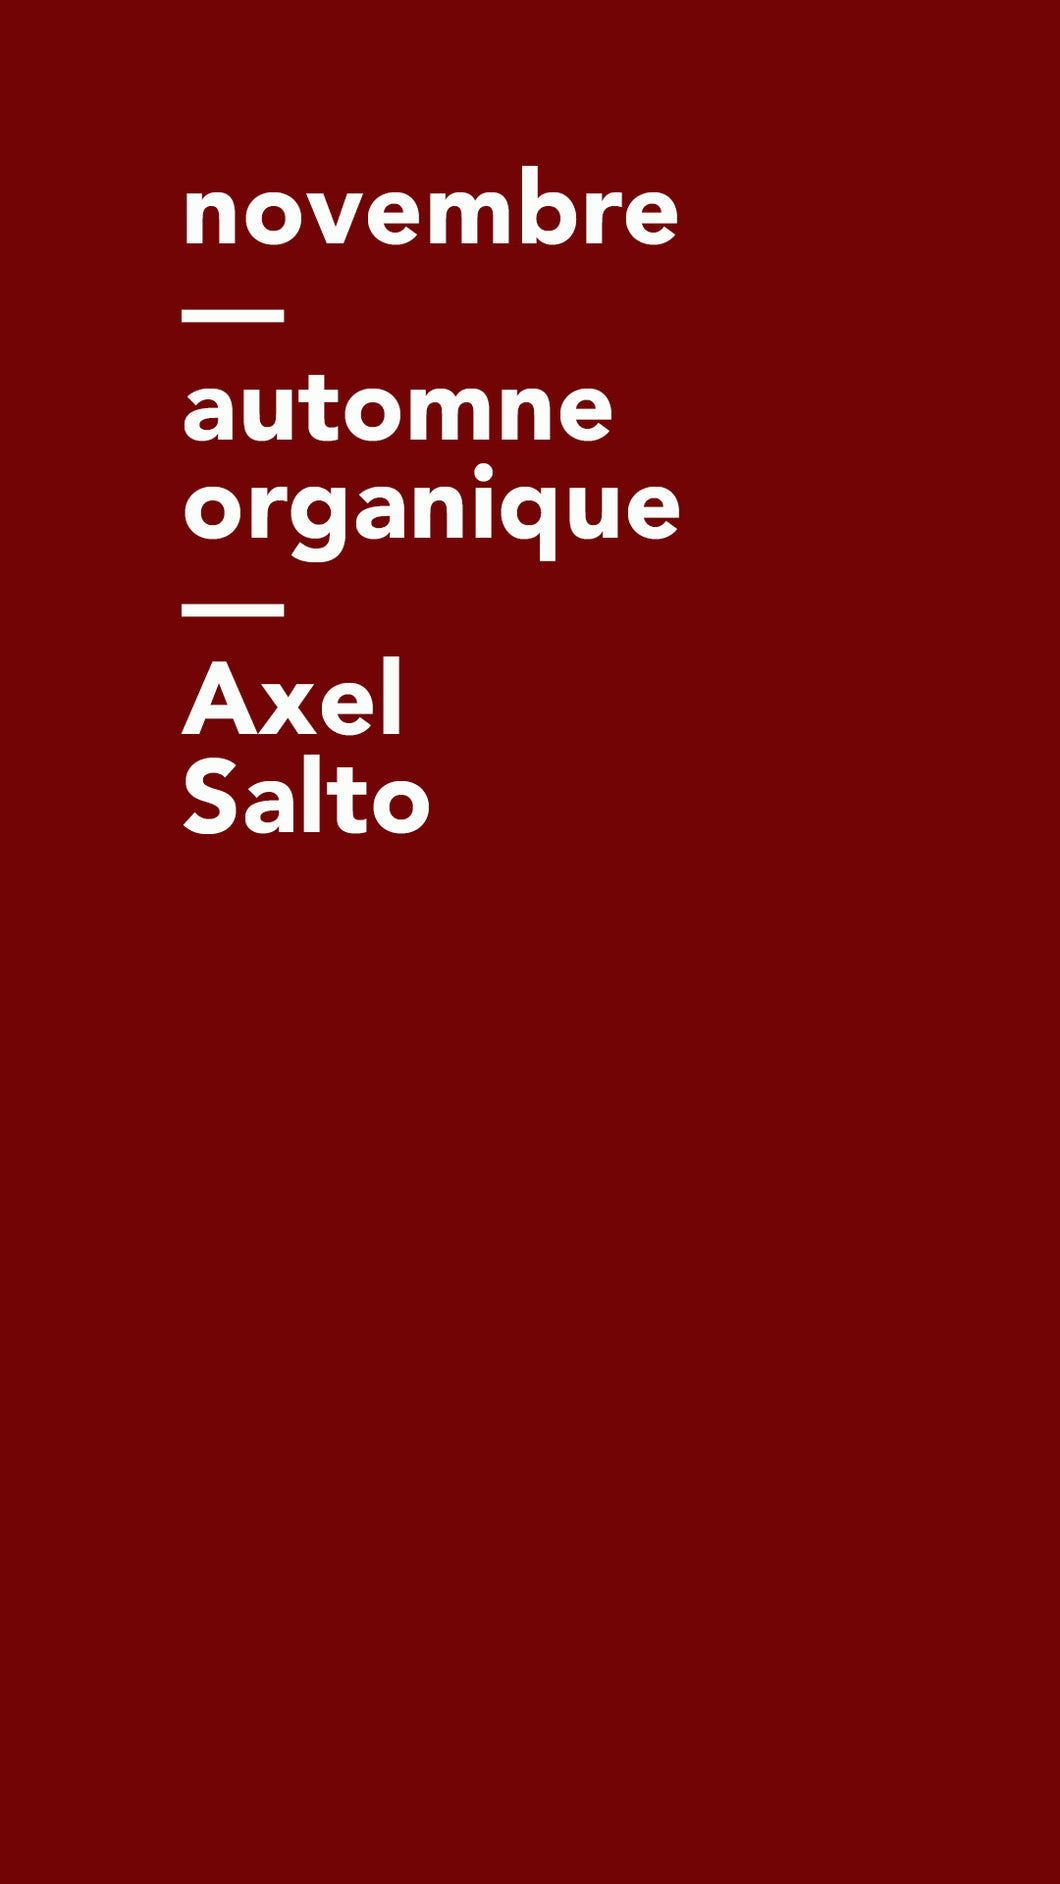 Workshop Axel Salto